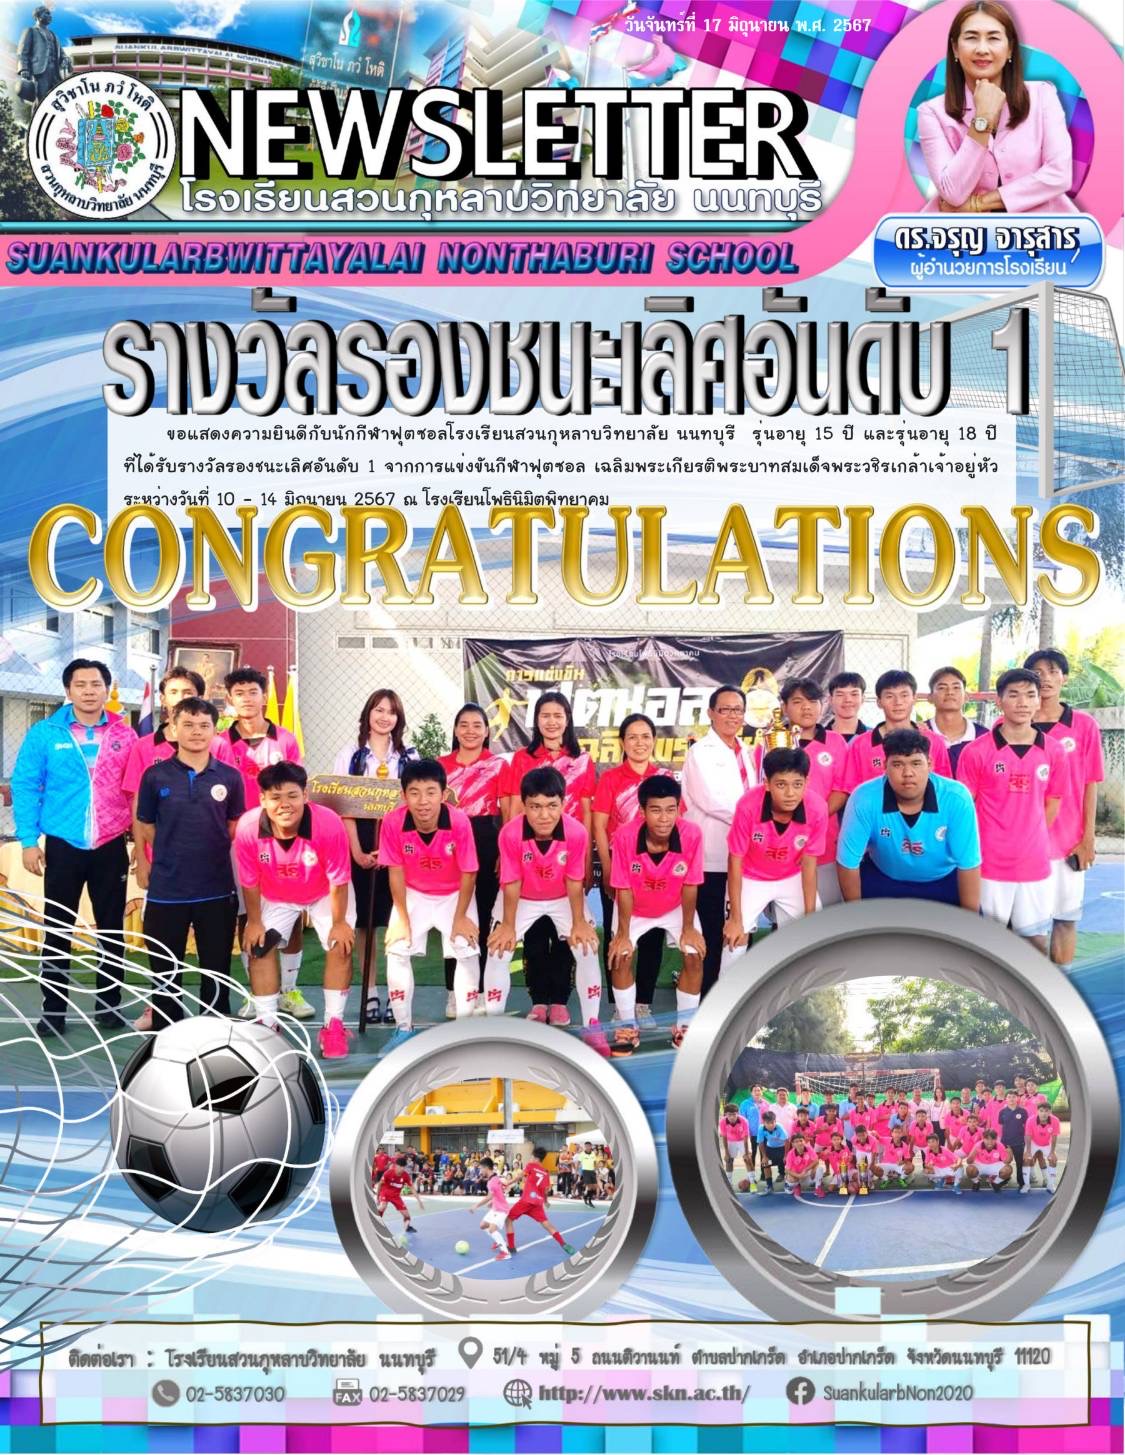 แสดงความยินดีกับทีมฟุตซอล โรงเรียนสวนกุหลาบวิทยาลัยนนทบุรี